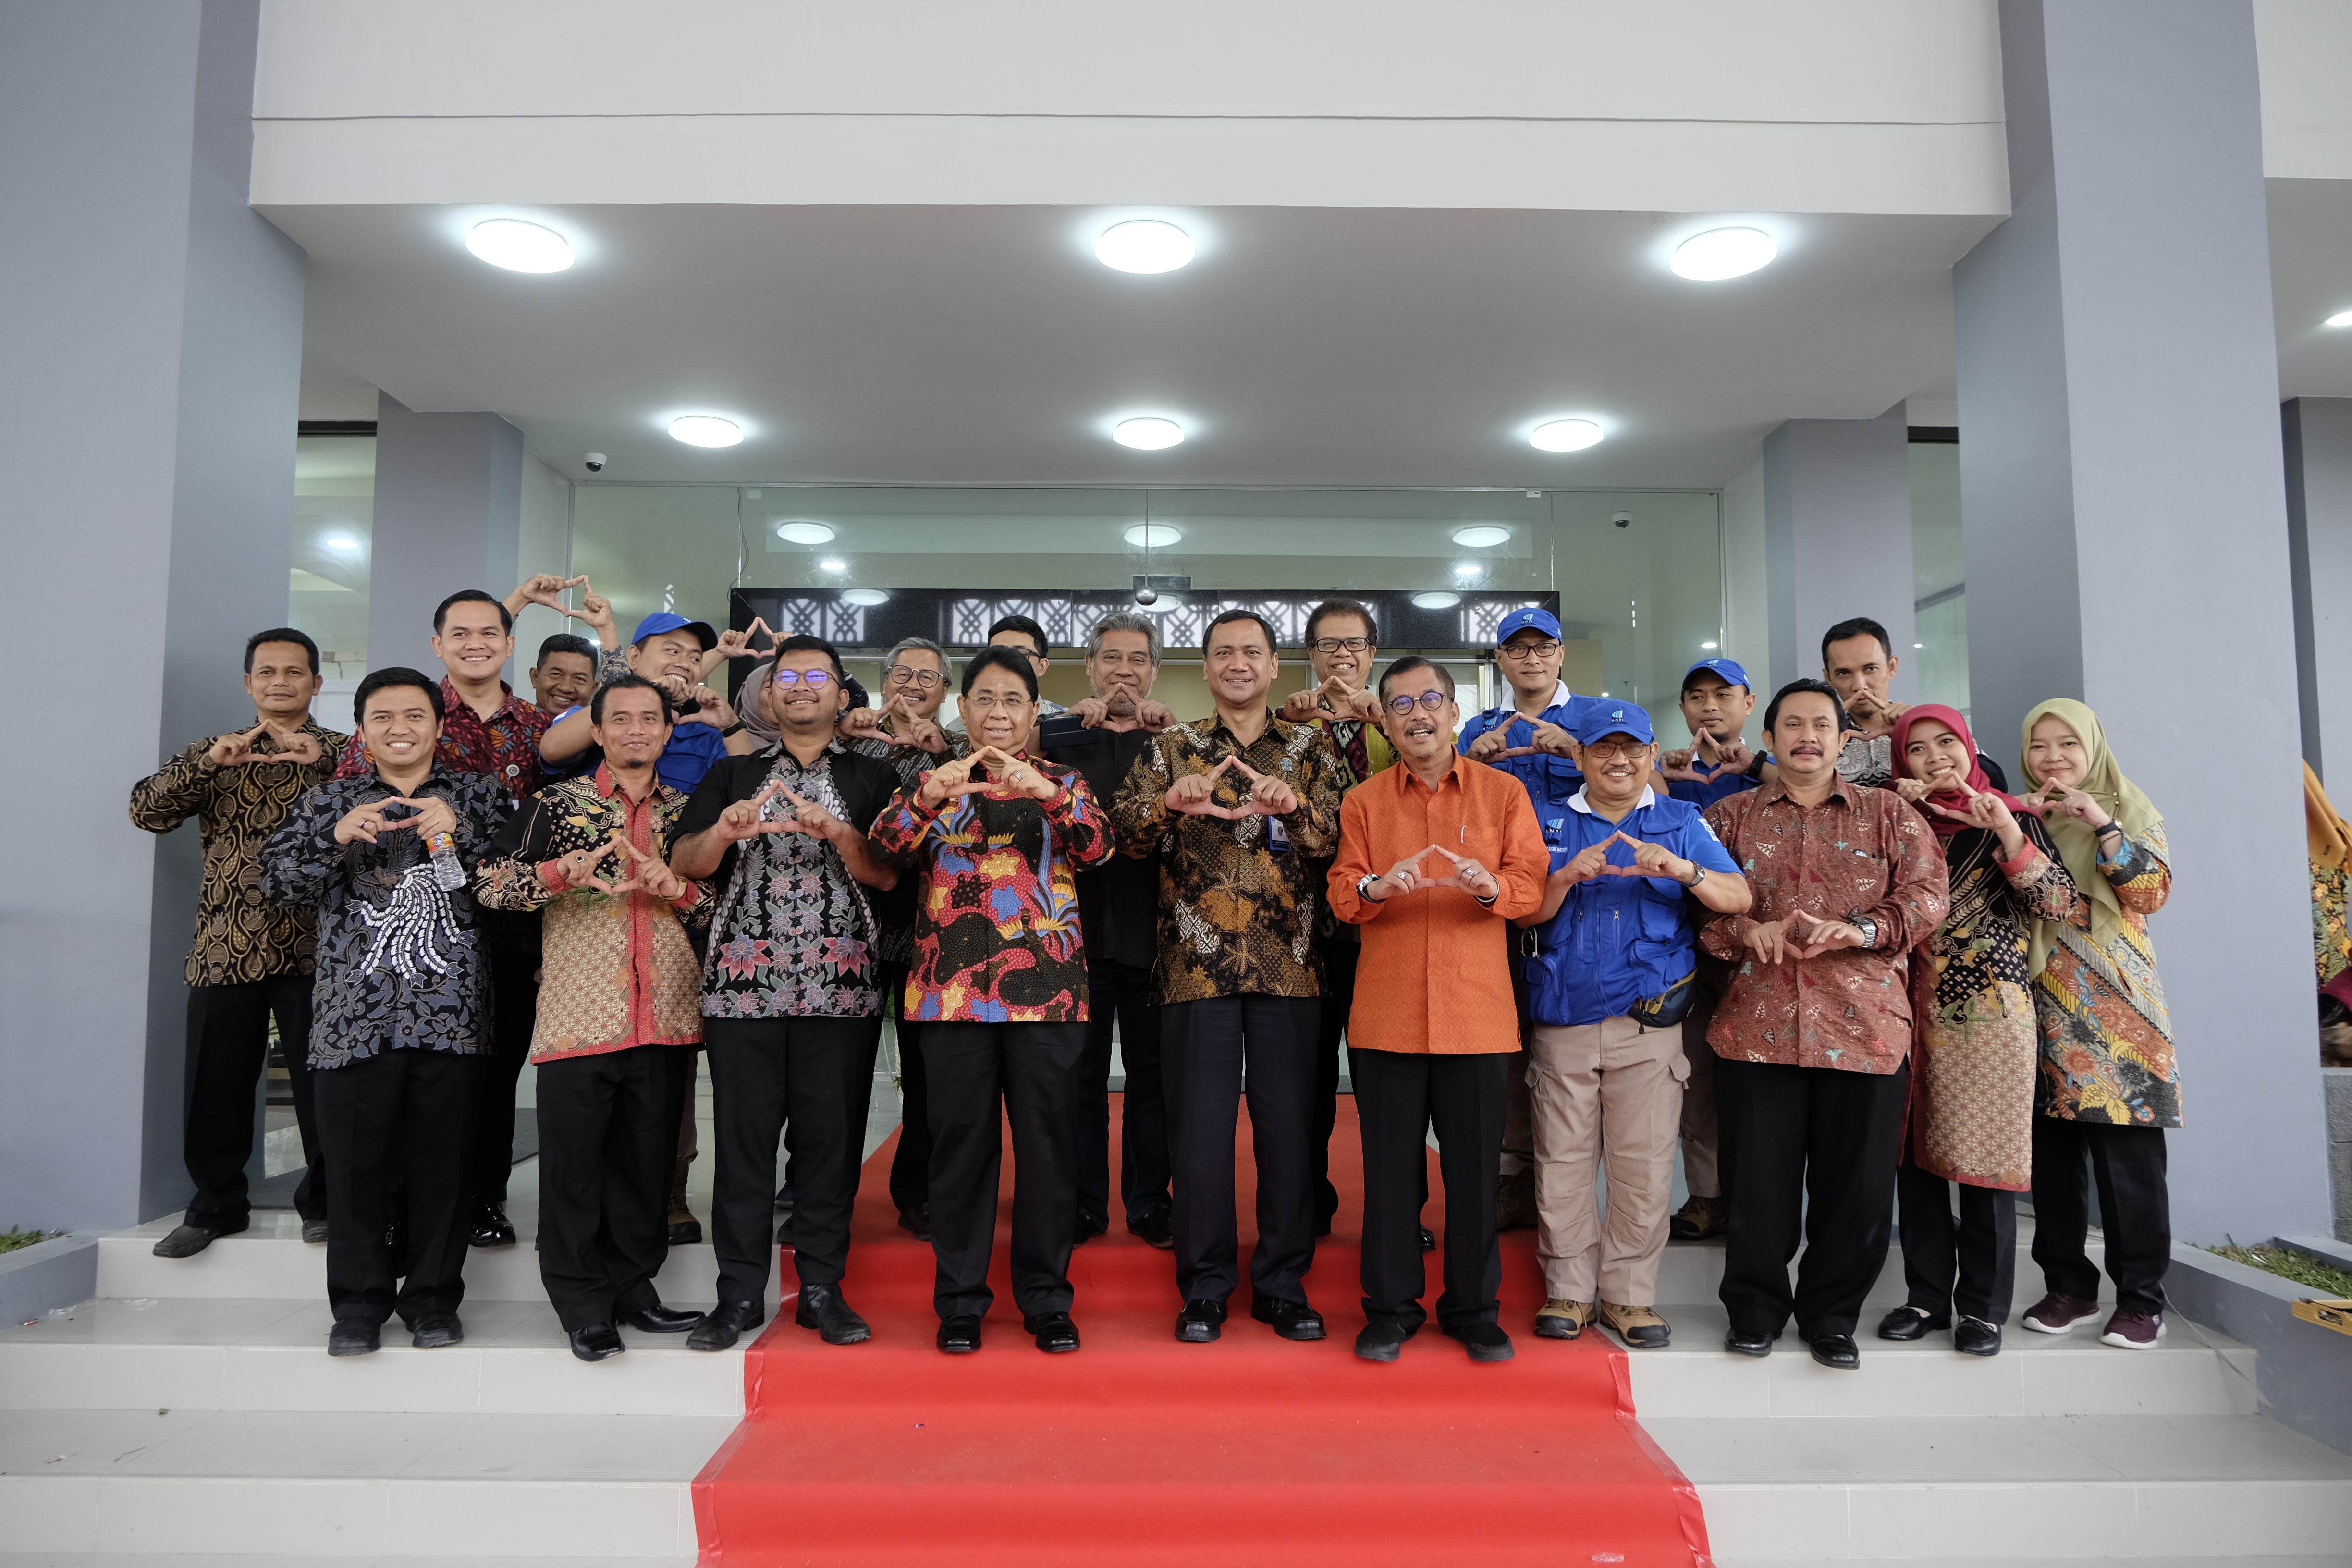 Wujudkan Smart Building Repository, ANRI resmikan Gedung Depot Arsip Balai Arsip Statis & Tsunami Aceh